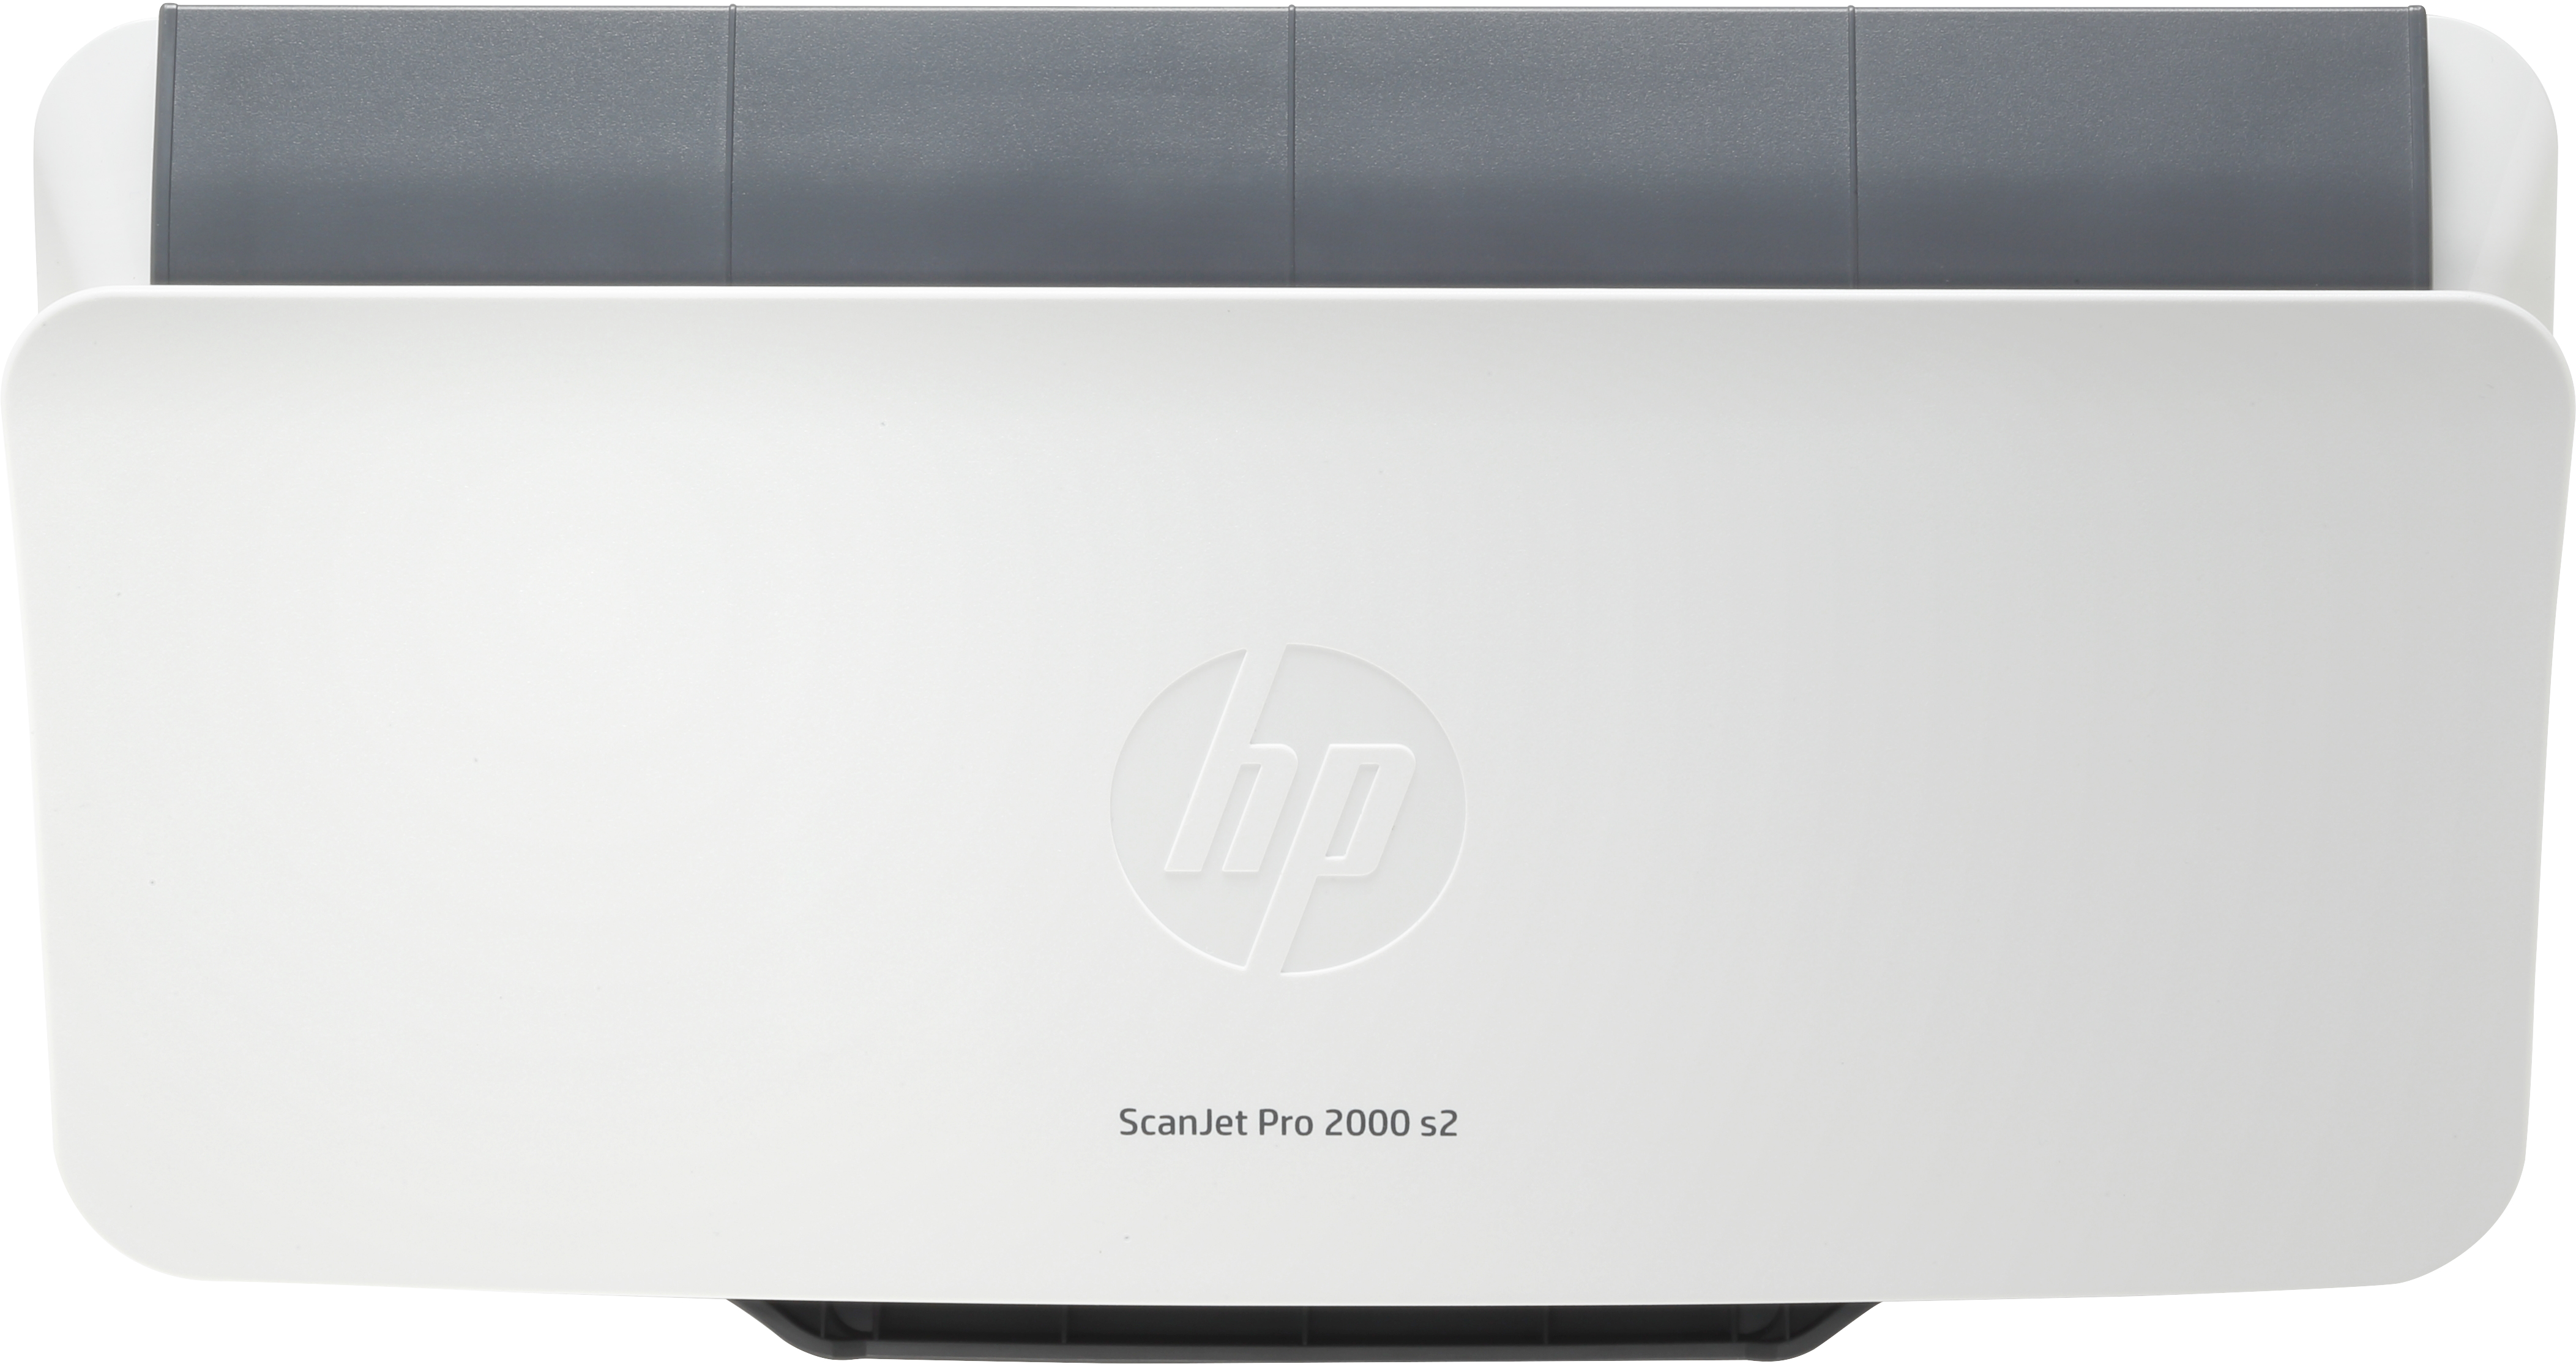 HP ScanJet Pro 2000 s2 Sheetfed Scanner - 600 dpi Optical - Duplex Scanning - USB